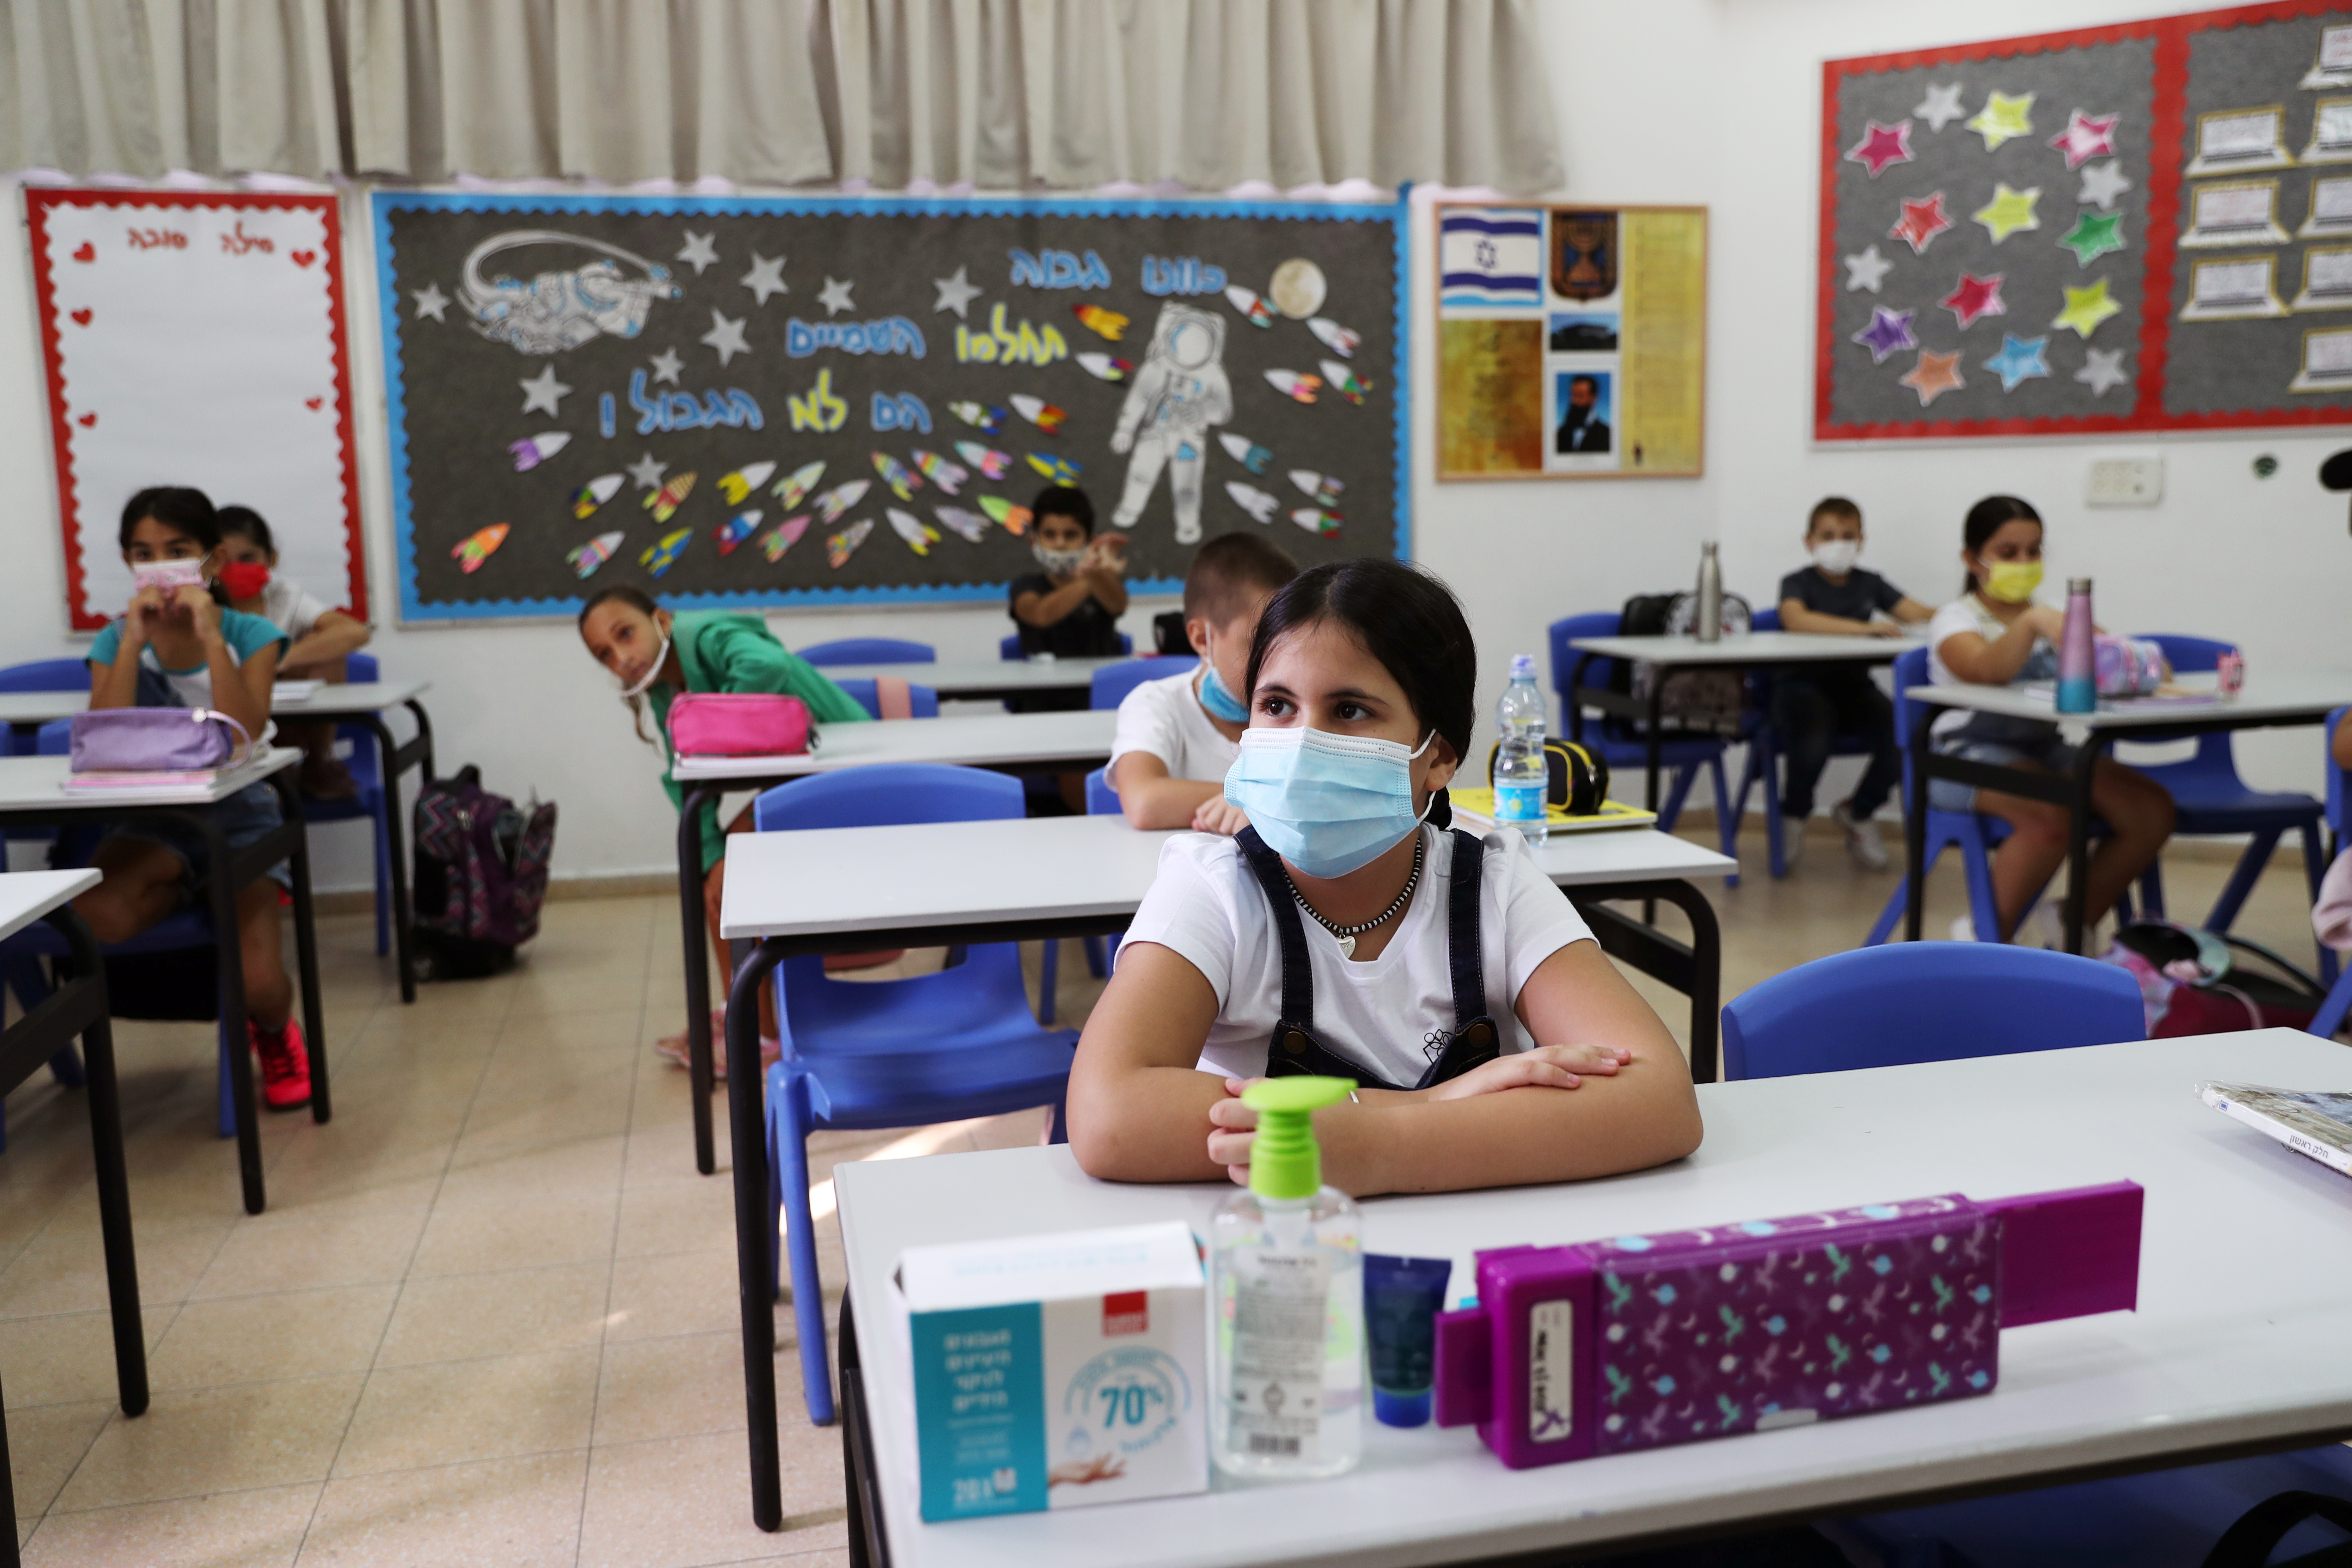 En las escuelas los alumnos deben utilizar mascarillas y respetar distanciamiento social (REUTERS/Ronen Zvulun)